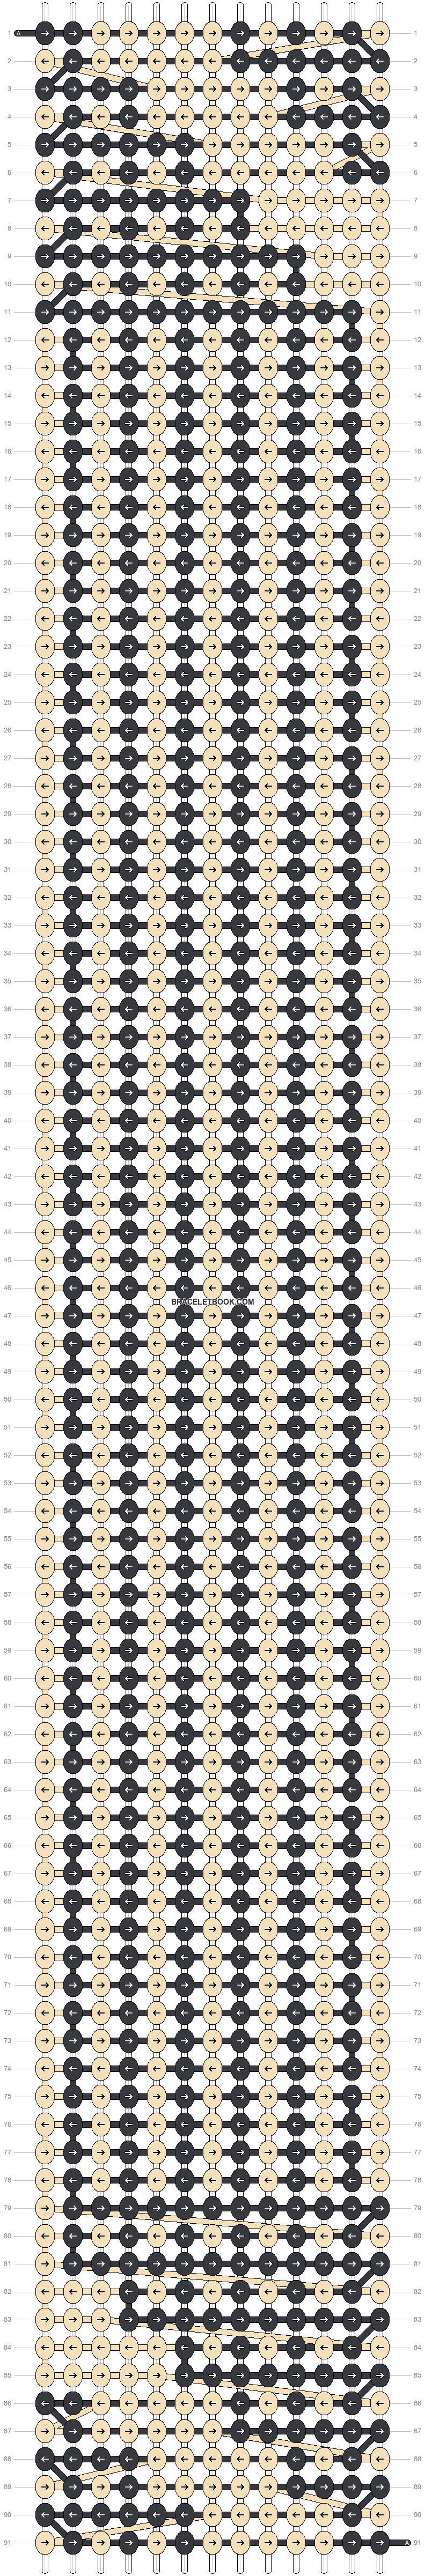 Alpha pattern #133270 | BraceletBook